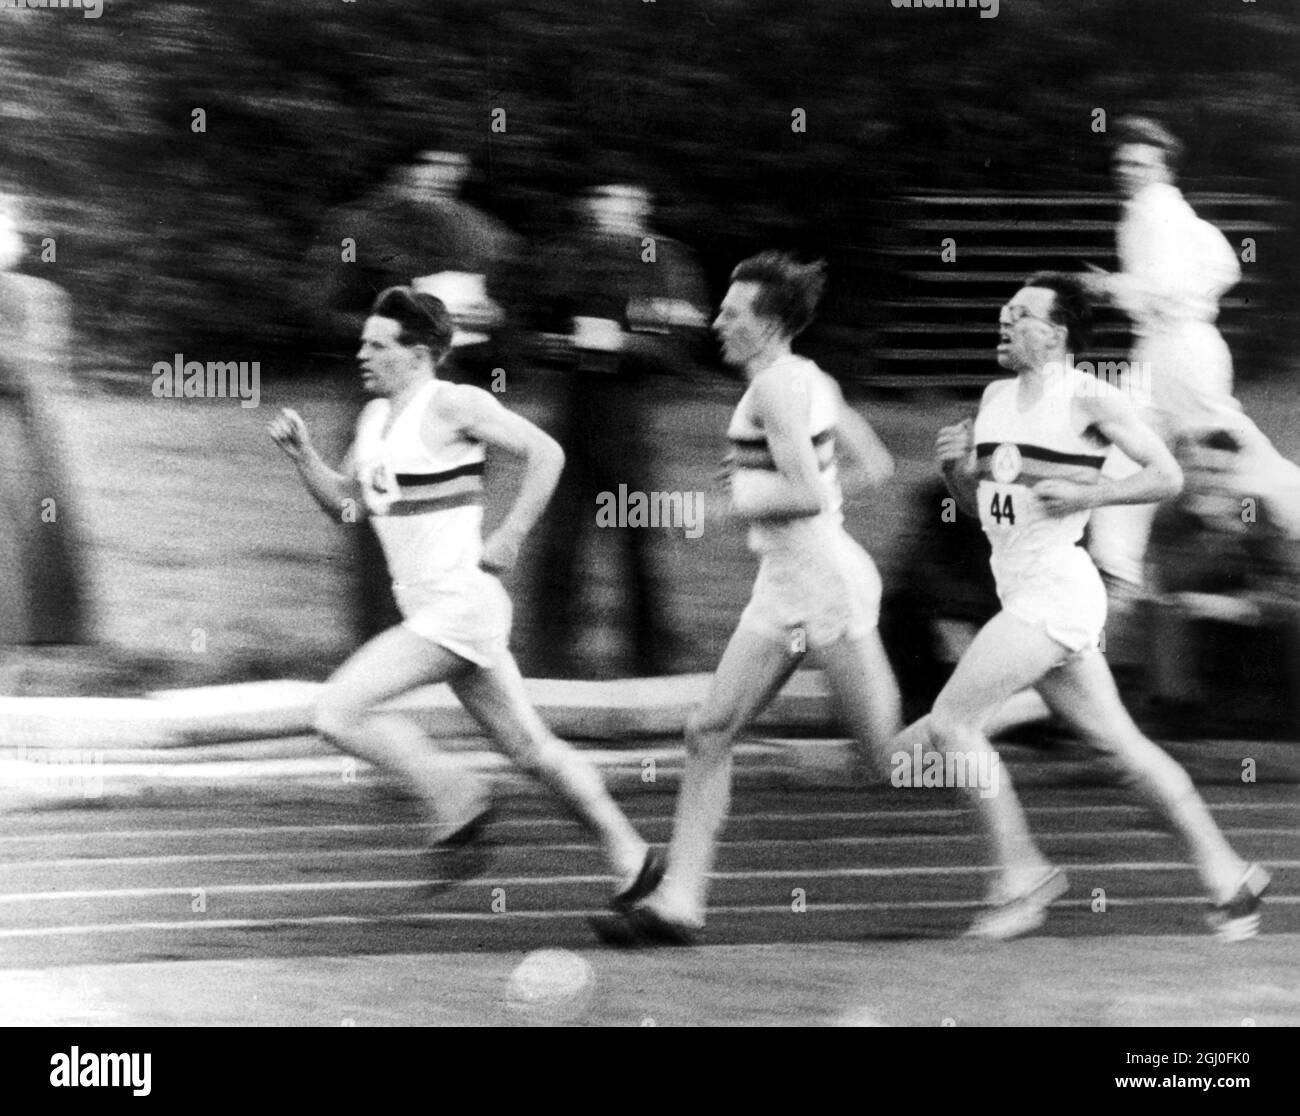 Roger Banister, qui a retourné 3 min 59,4 sec sur le mile à Oxford hier, photographié pendant la course record sur le point de dépasser Chris Chatterway pour commencer son merveilleux dernier tour. Chris Brasher est vu derrière Bannister. Ces deux coureurs ont joué un rôle important dans le succès de Banister - 7 mai 1954 Banque D'Images